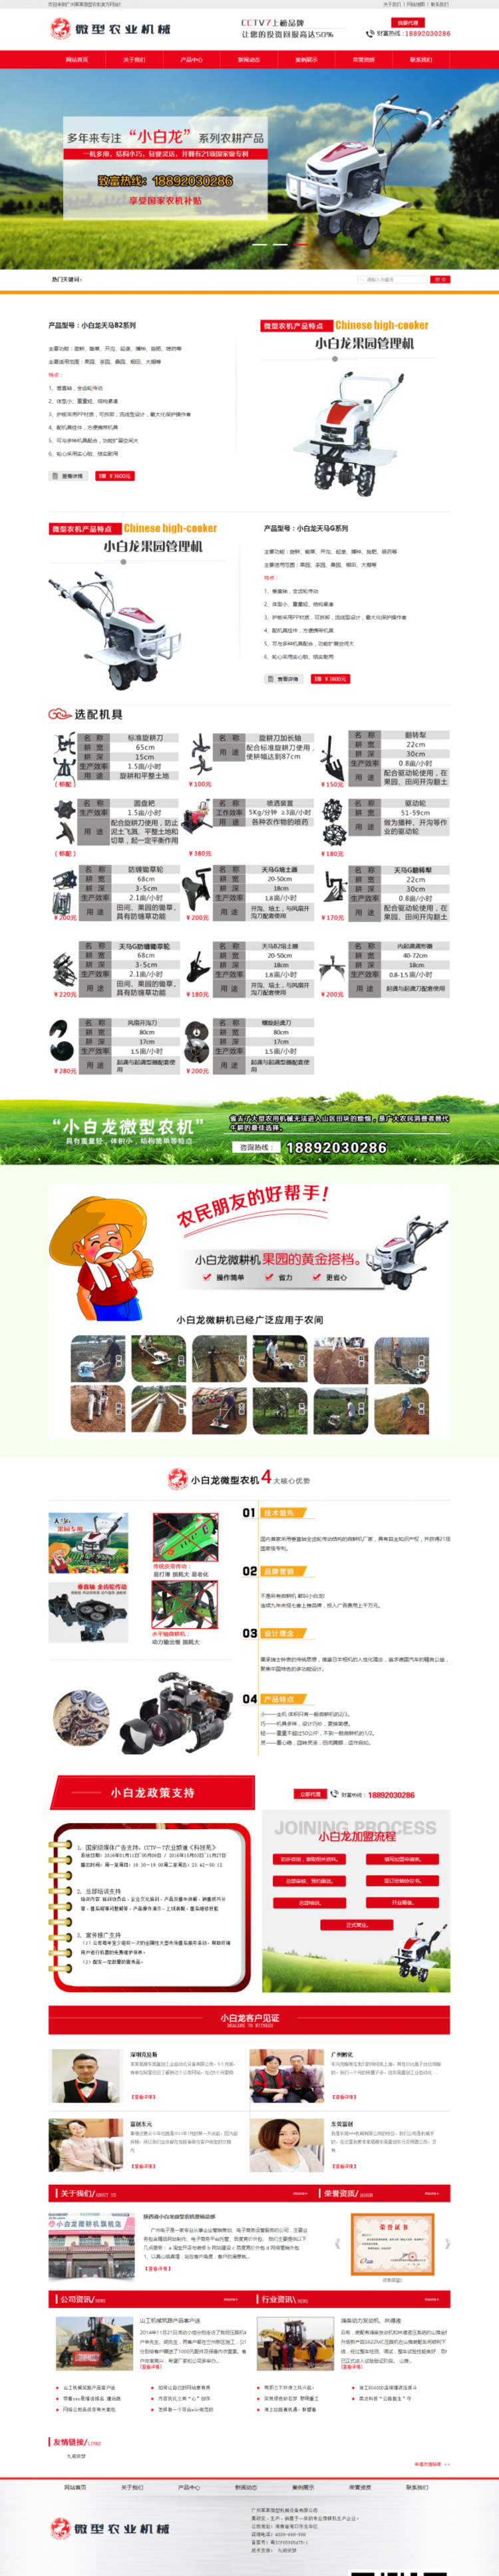 营销型微型农业机械设备类网站织梦模板(带手机端)电脑端演示